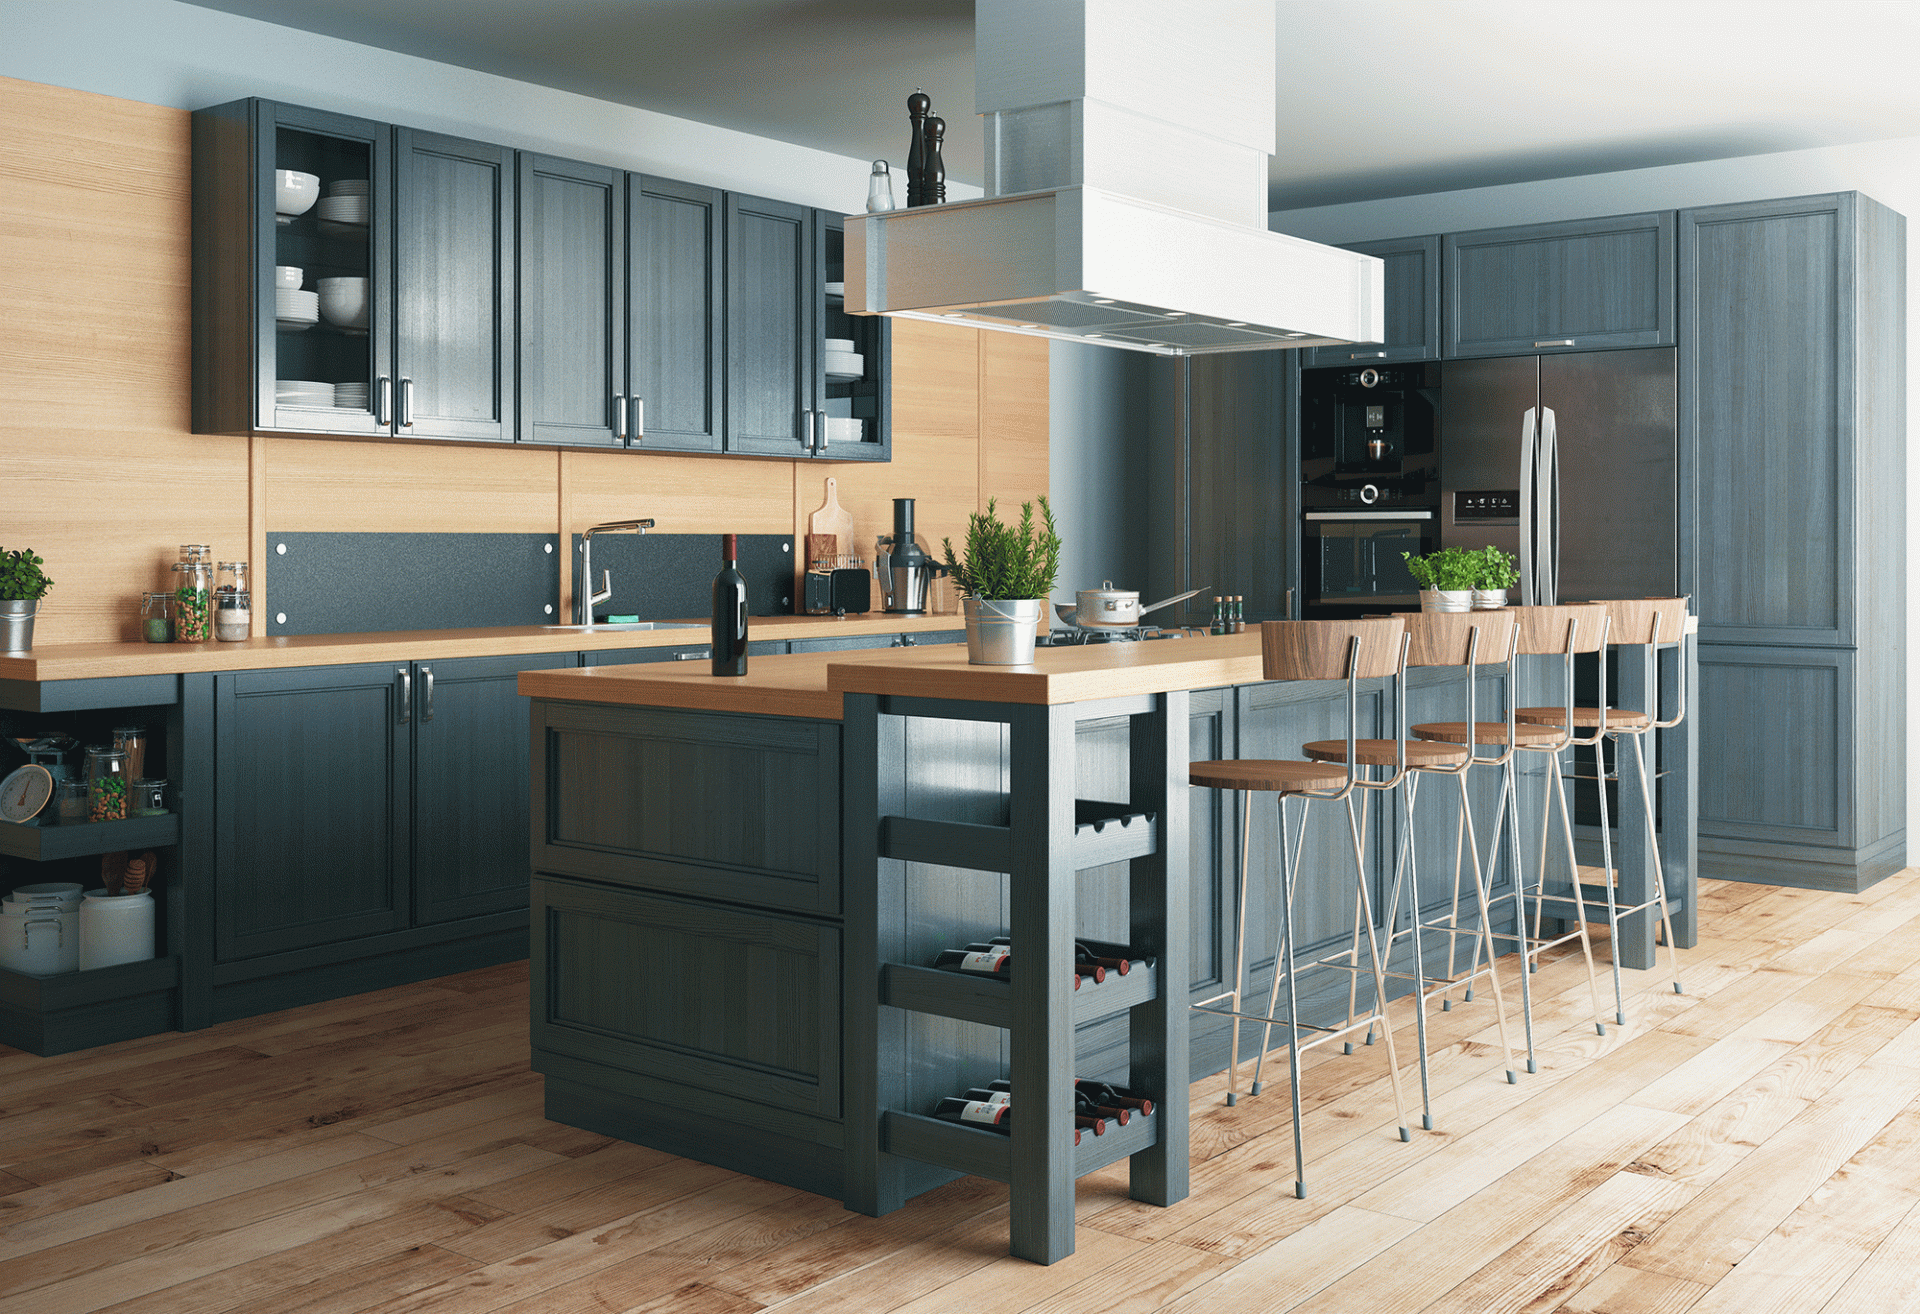 2019 kitchen design trends to watch | choice windows blog